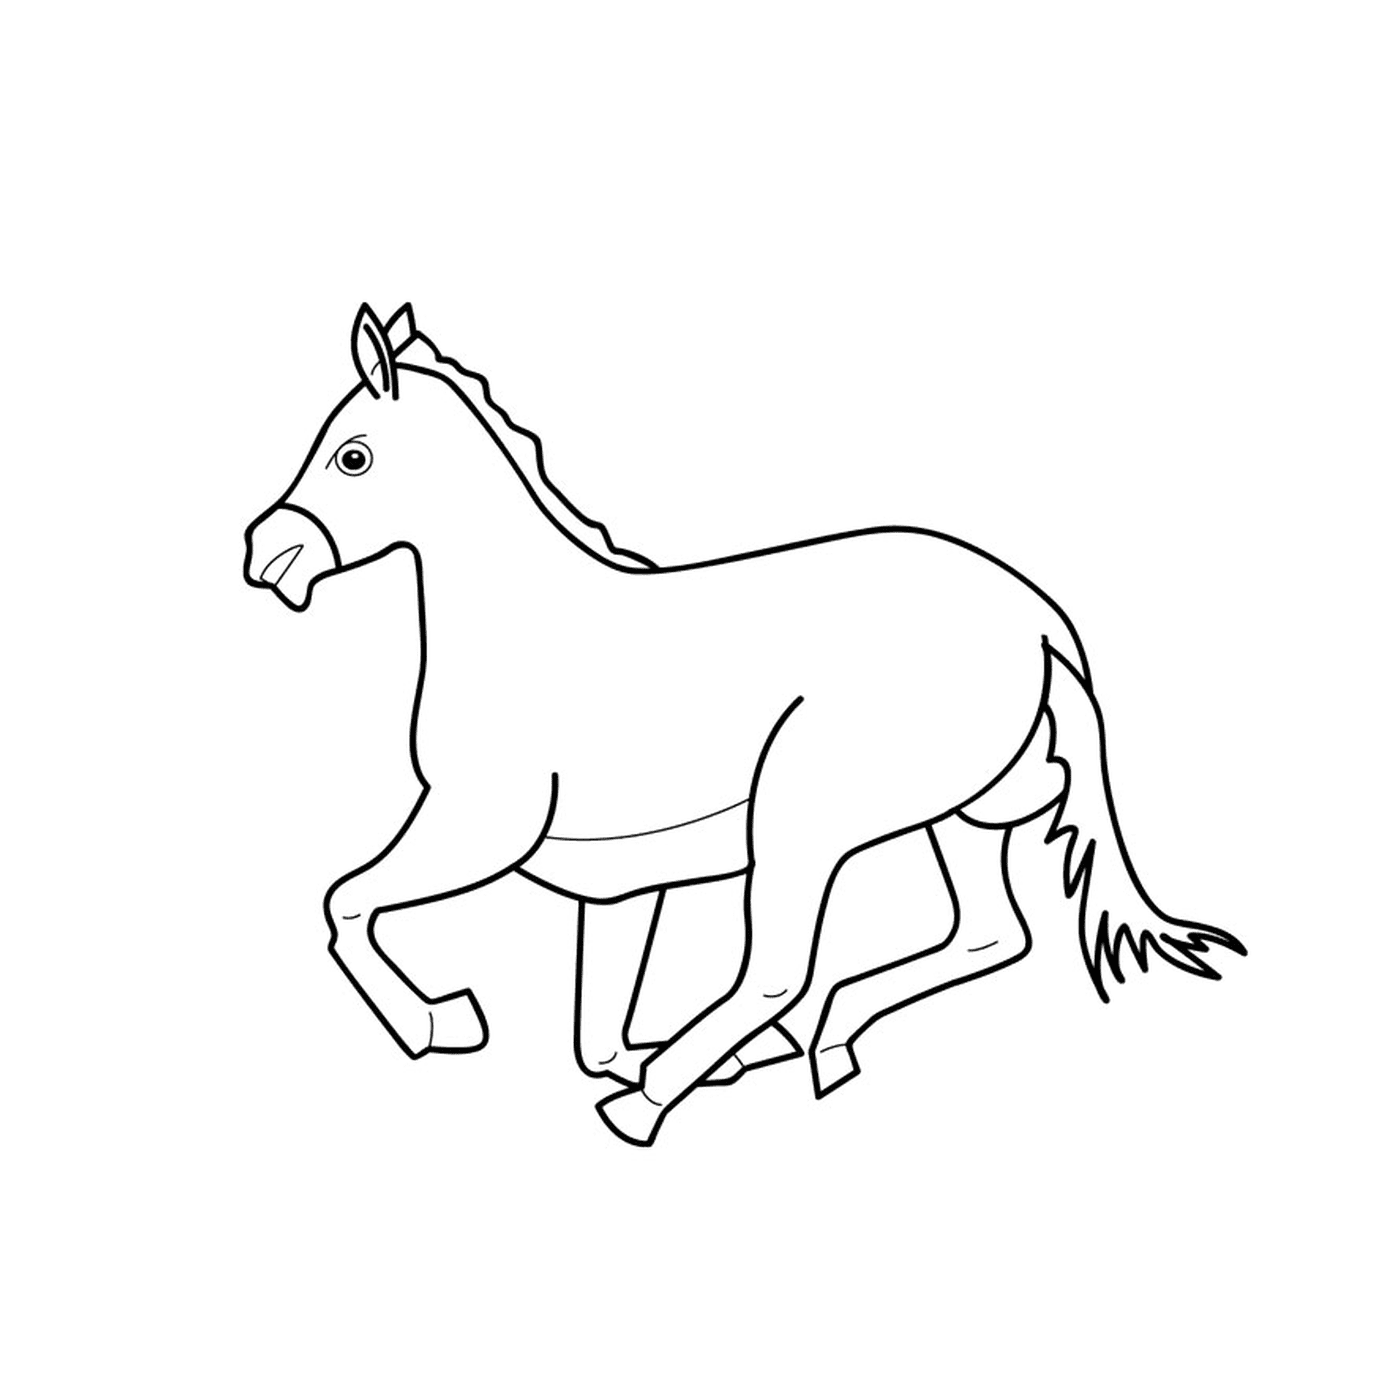   Cheval au galop - Un cheval qui court 